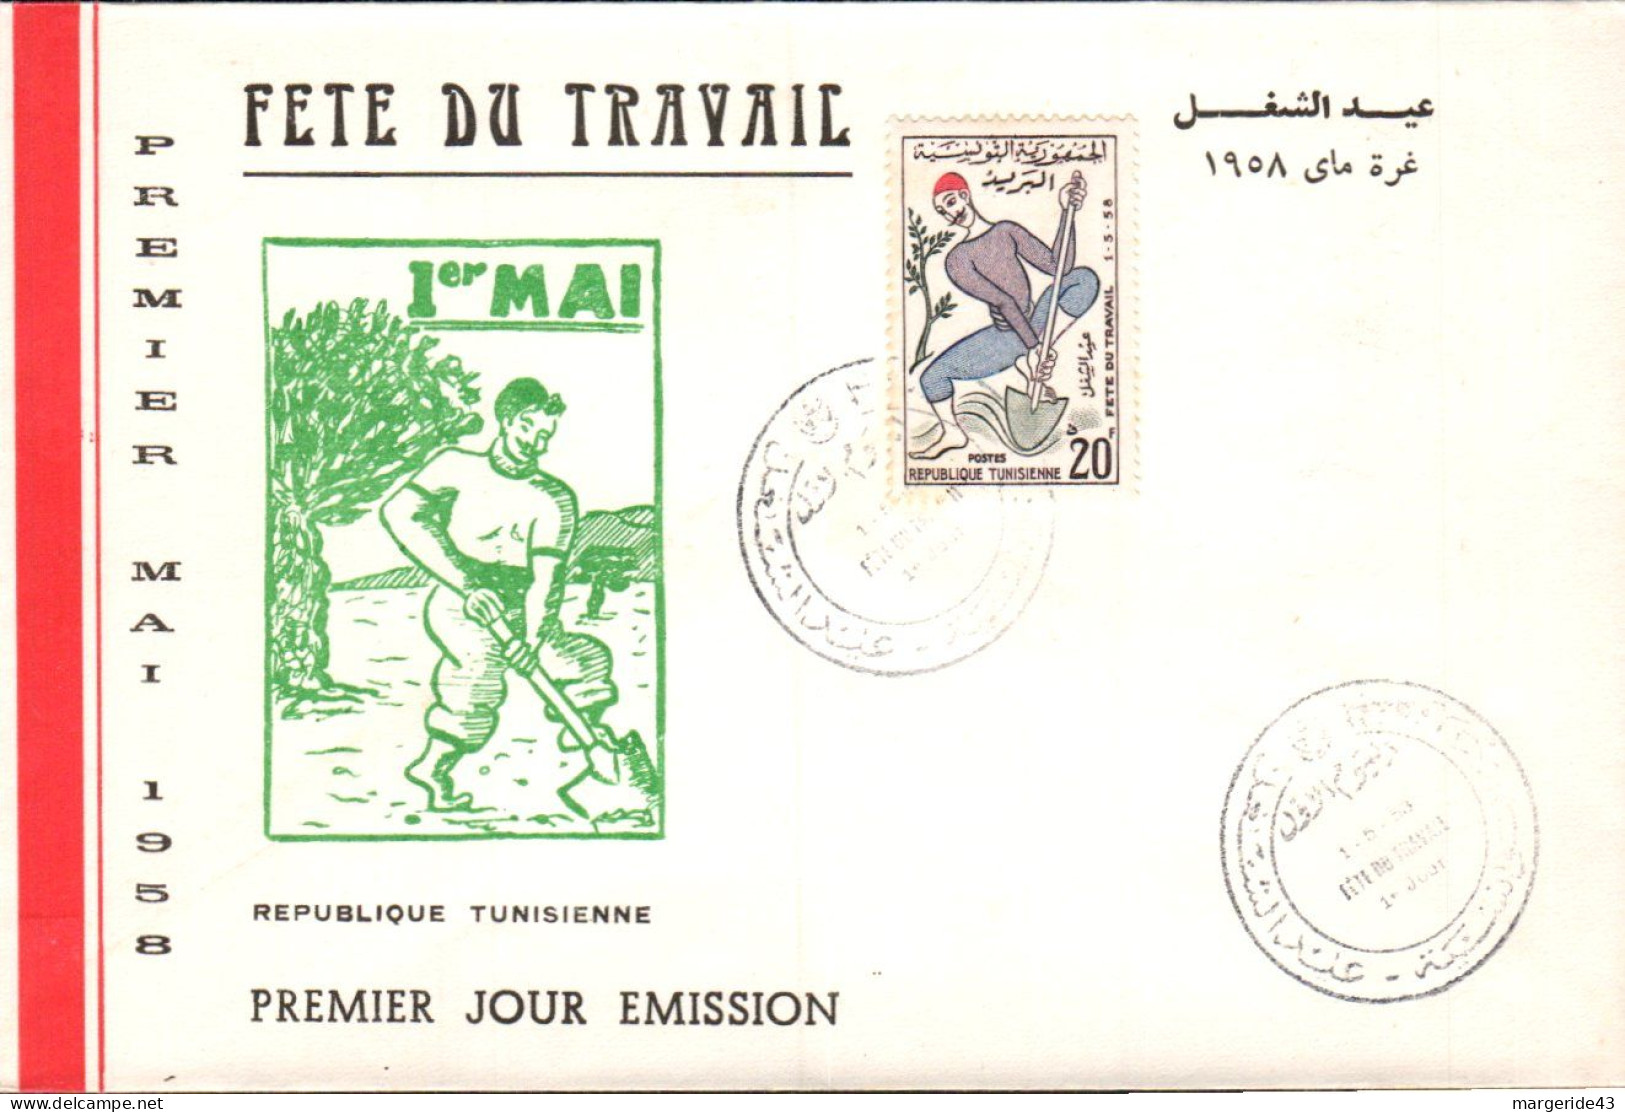 TUNISIE FDC 1958 FETE DU TRAVAIL 1 ER MAI - Tunisie (1956-...)